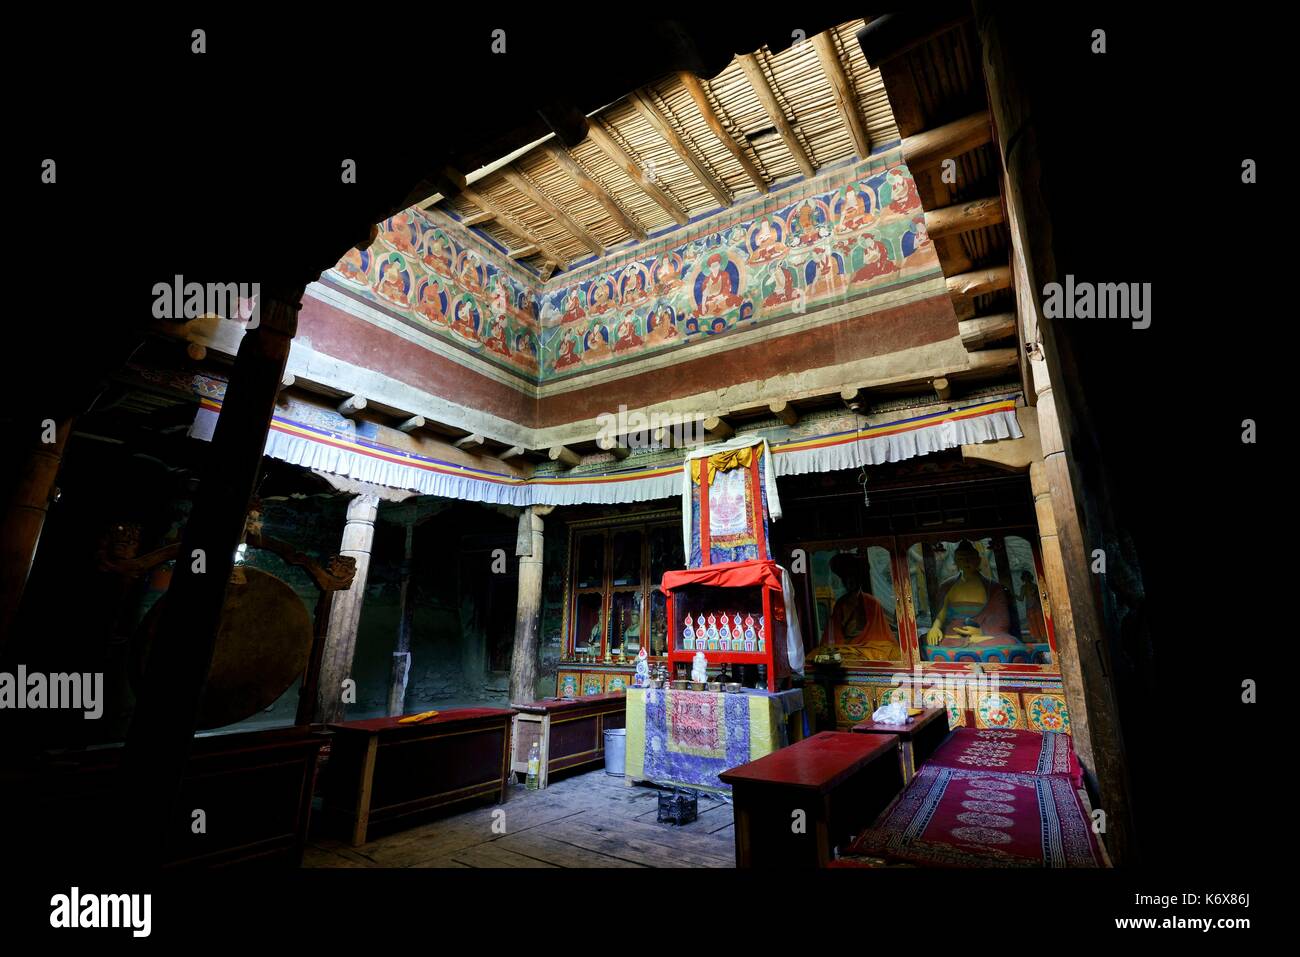 India, dello Stato del Jammu e Kashmir, Himalaya, Ladakh, Indus Valle, interno del monastero buddista di Lamayuru (Yungdrung) Foto Stock